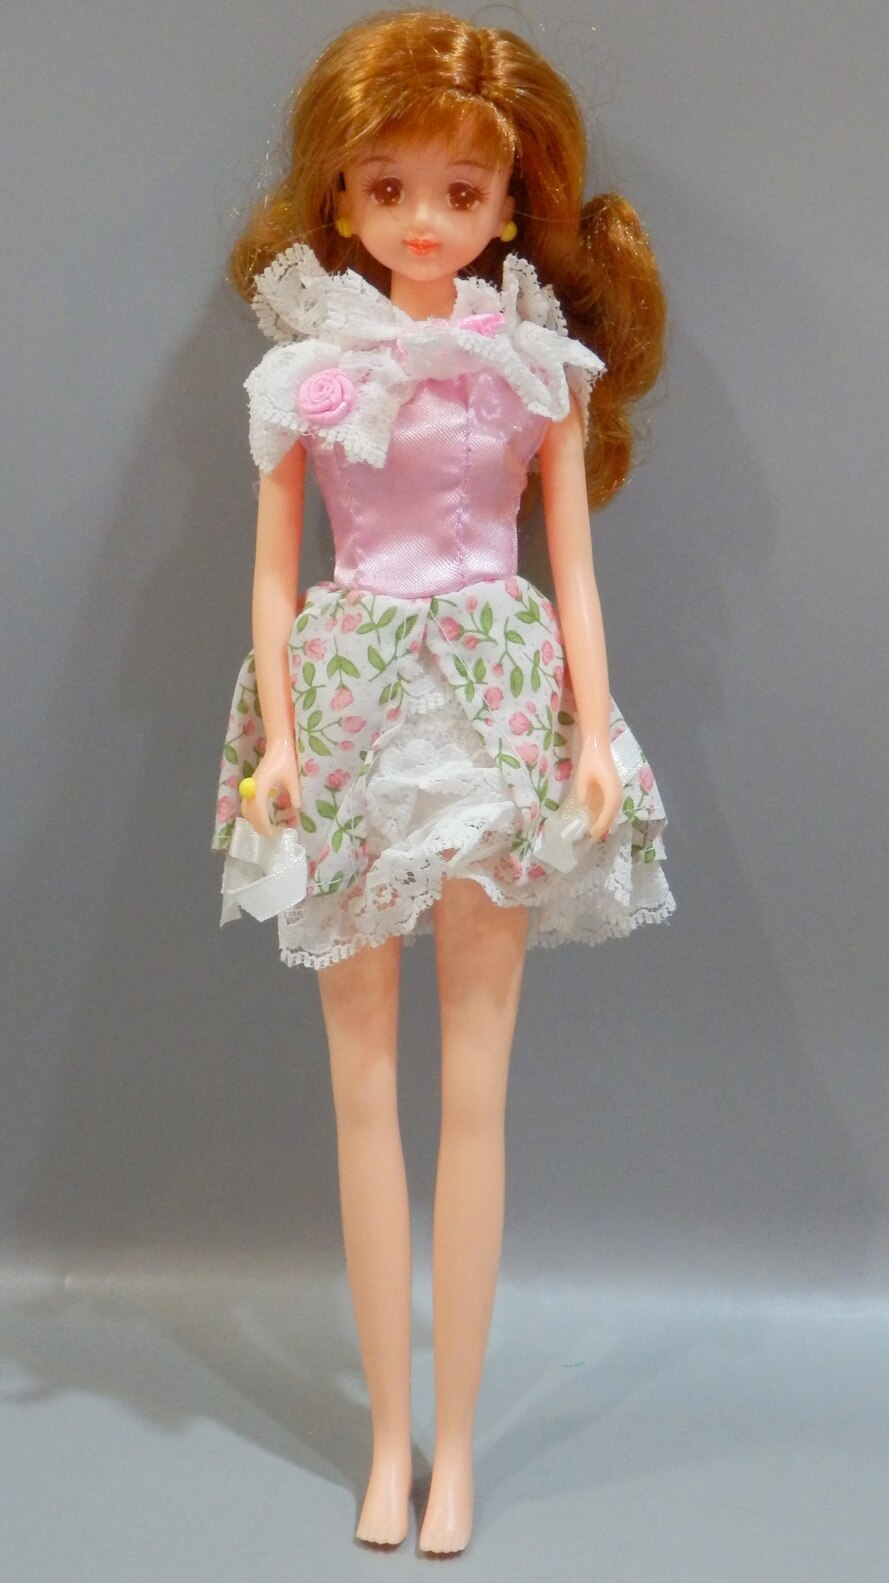 日本在庫カレンダーガール ジェニー 1997年 バースディフラワー 2月 スイートピー お誕生花 人形